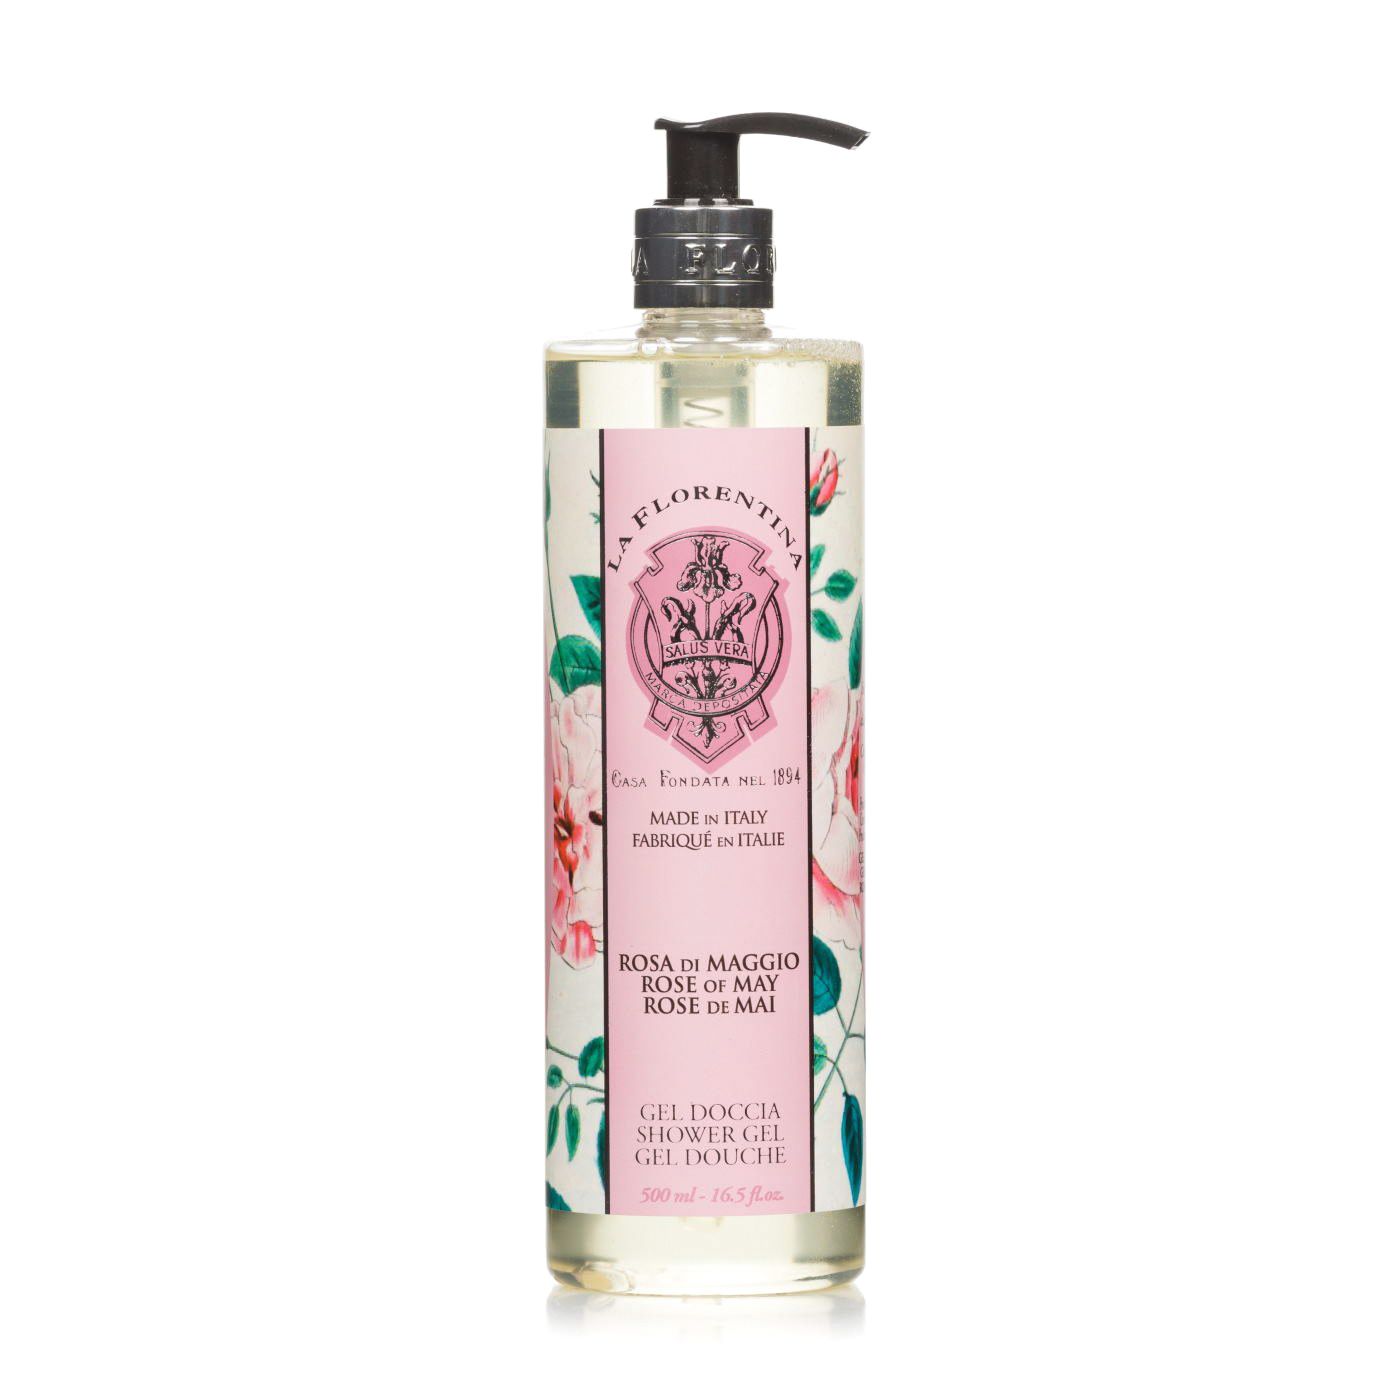 La Florentina Shower Gel Rose of May Гель для душа увлажняюший с оливковым маслом и экстрактом майской розы 500 мл